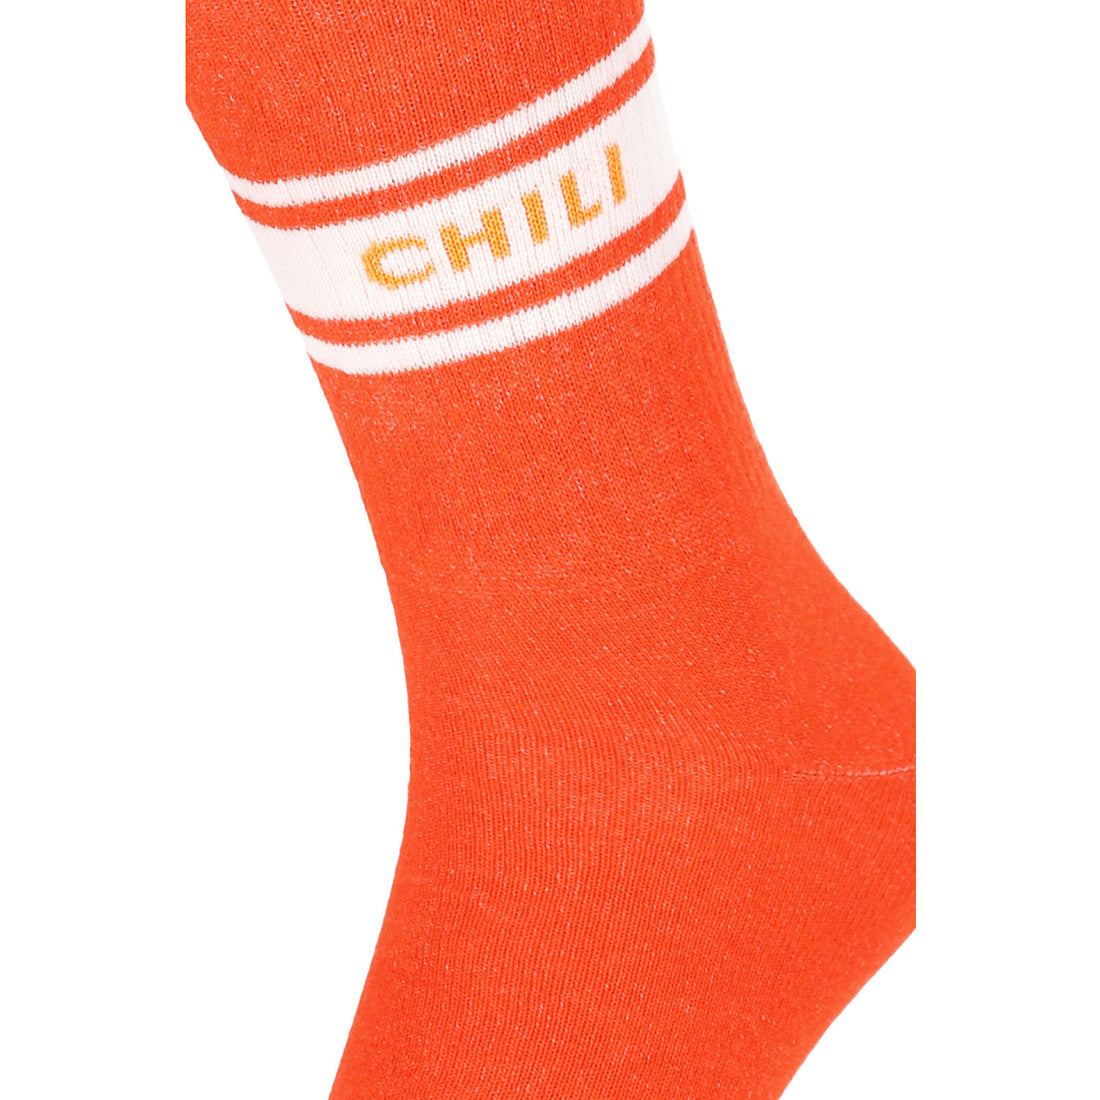 ChiliLifestyle Unisex College Socke 6er